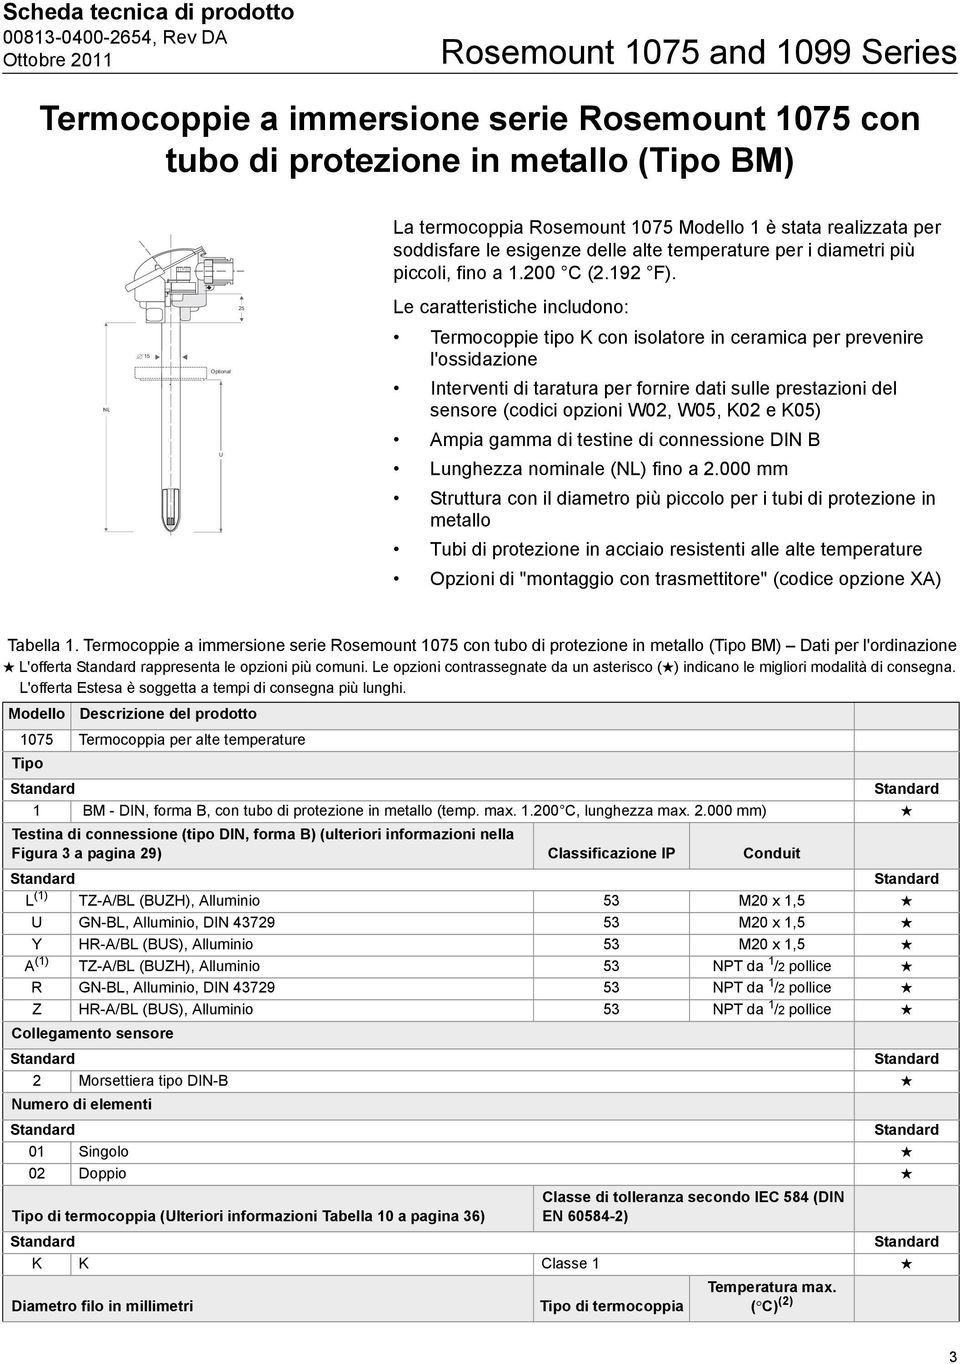 25 Le caratteristiche includono: NL 15 Optional Termocoppie tipo K con isolatore in ceramica per prevenire l'ossidazione Interventi di taratura per fornire dati sulle prestazioni del sensore (codici